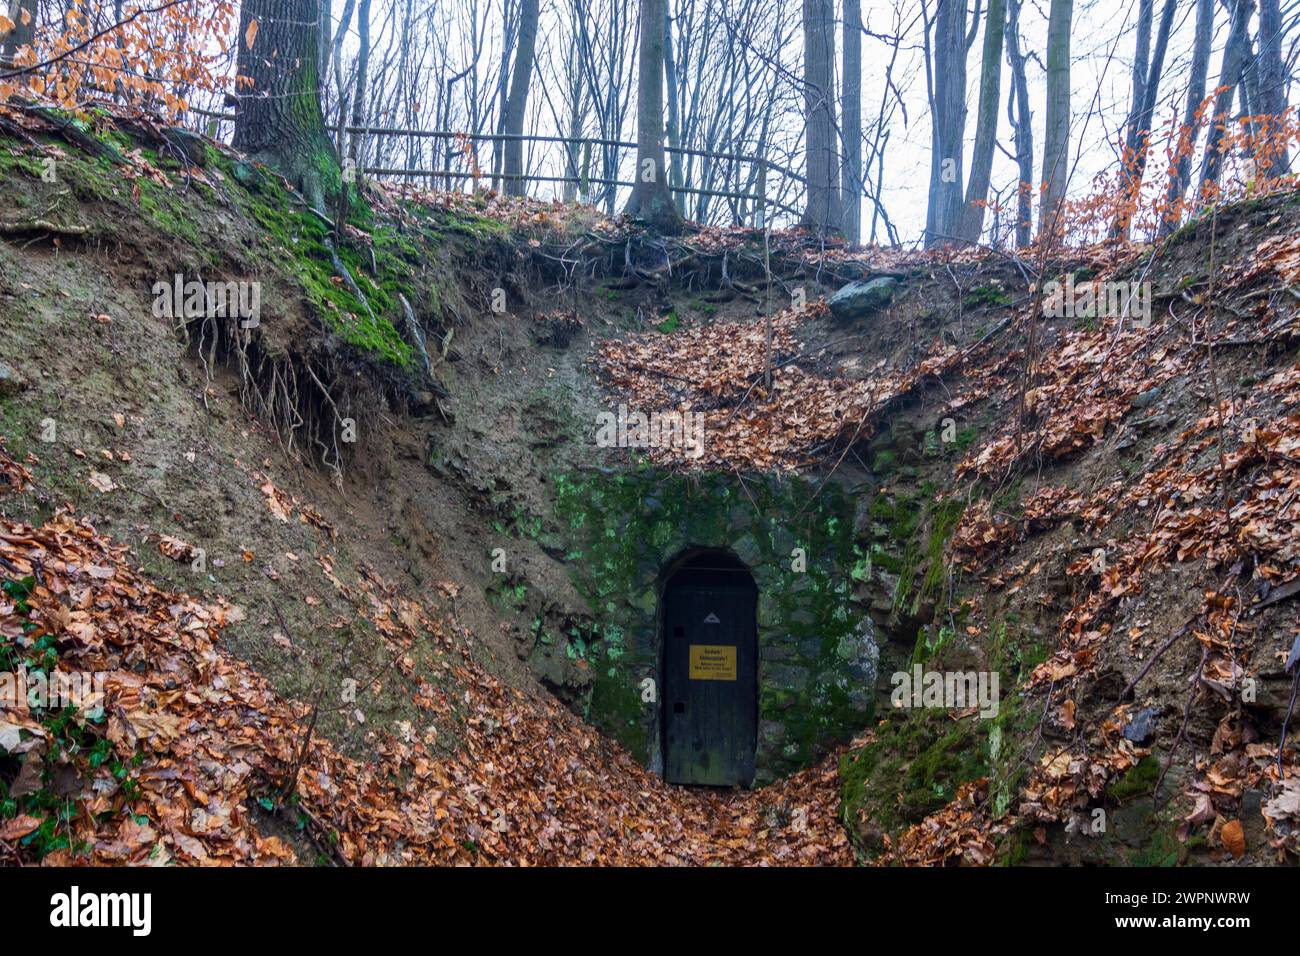 Bad Gottleuba-Berggießhübel, entrance to old mine, Saxony, Germany Stock Photo